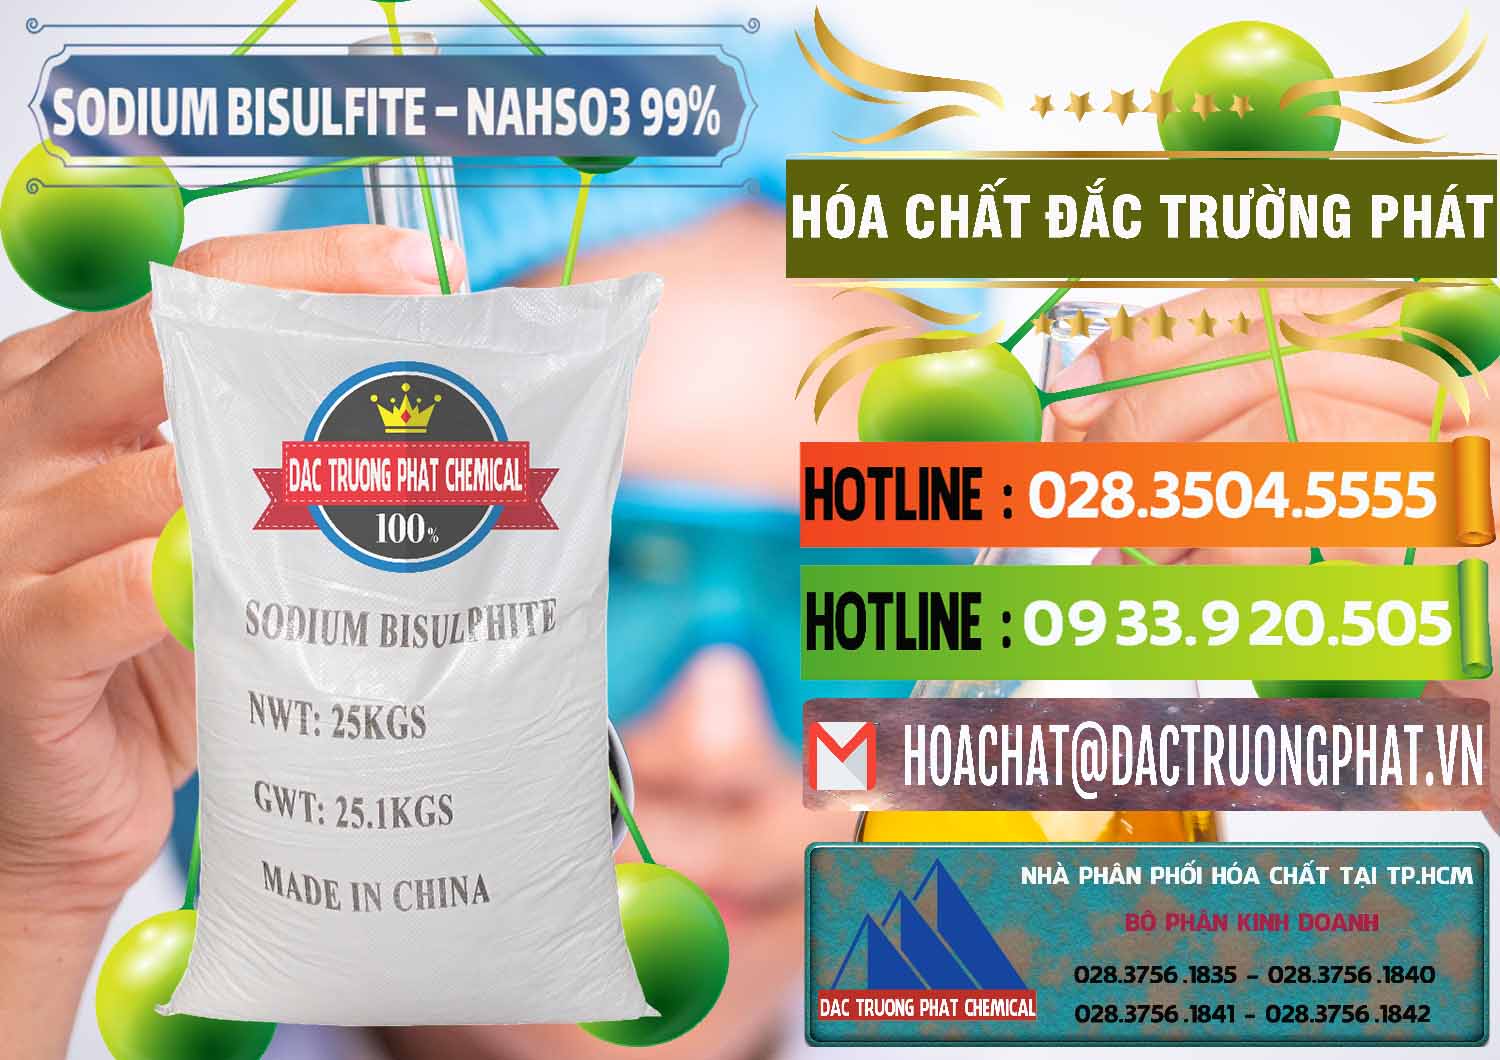 Cty cung cấp ( bán ) Sodium Bisulfite – NAHSO3 Trung Quốc China - 0140 - Cung cấp - phân phối hóa chất tại TP.HCM - cungcaphoachat.com.vn